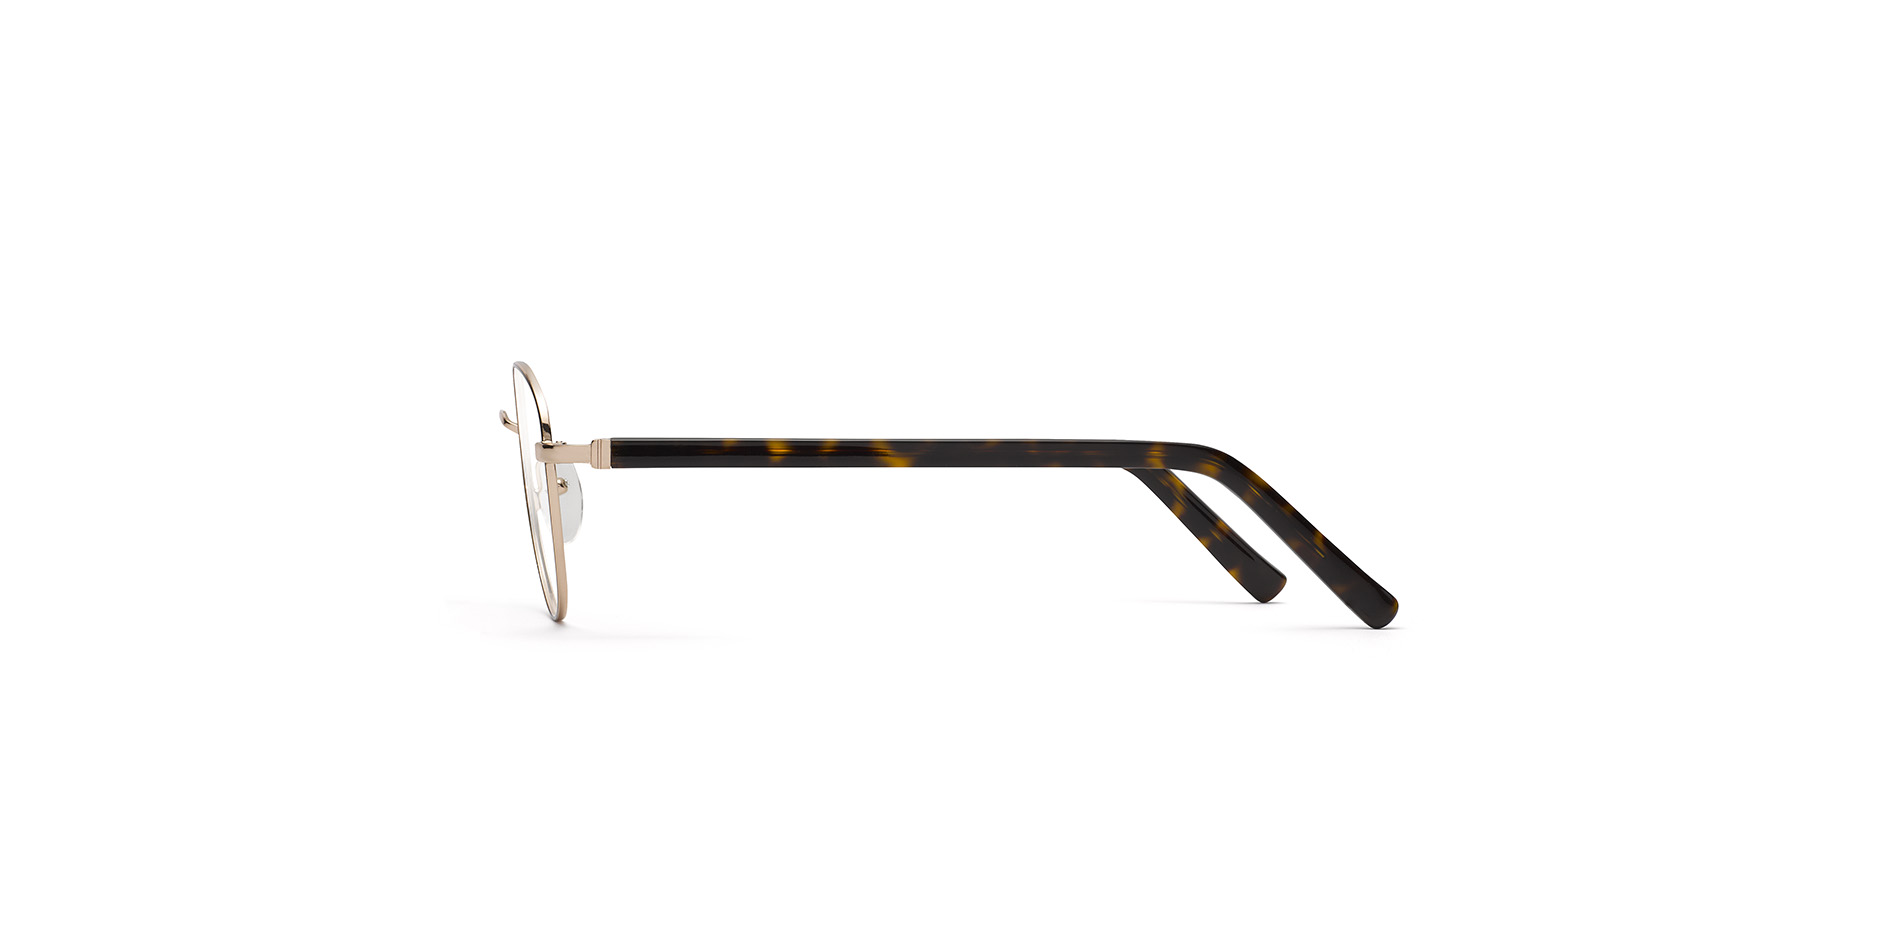 Klassische Damen-Korrektionsbrille aus Edelstahl in Pantoform, der Bügel ist mit einem Flexscharnier ausgestattet,  OU 022 FLEX CL